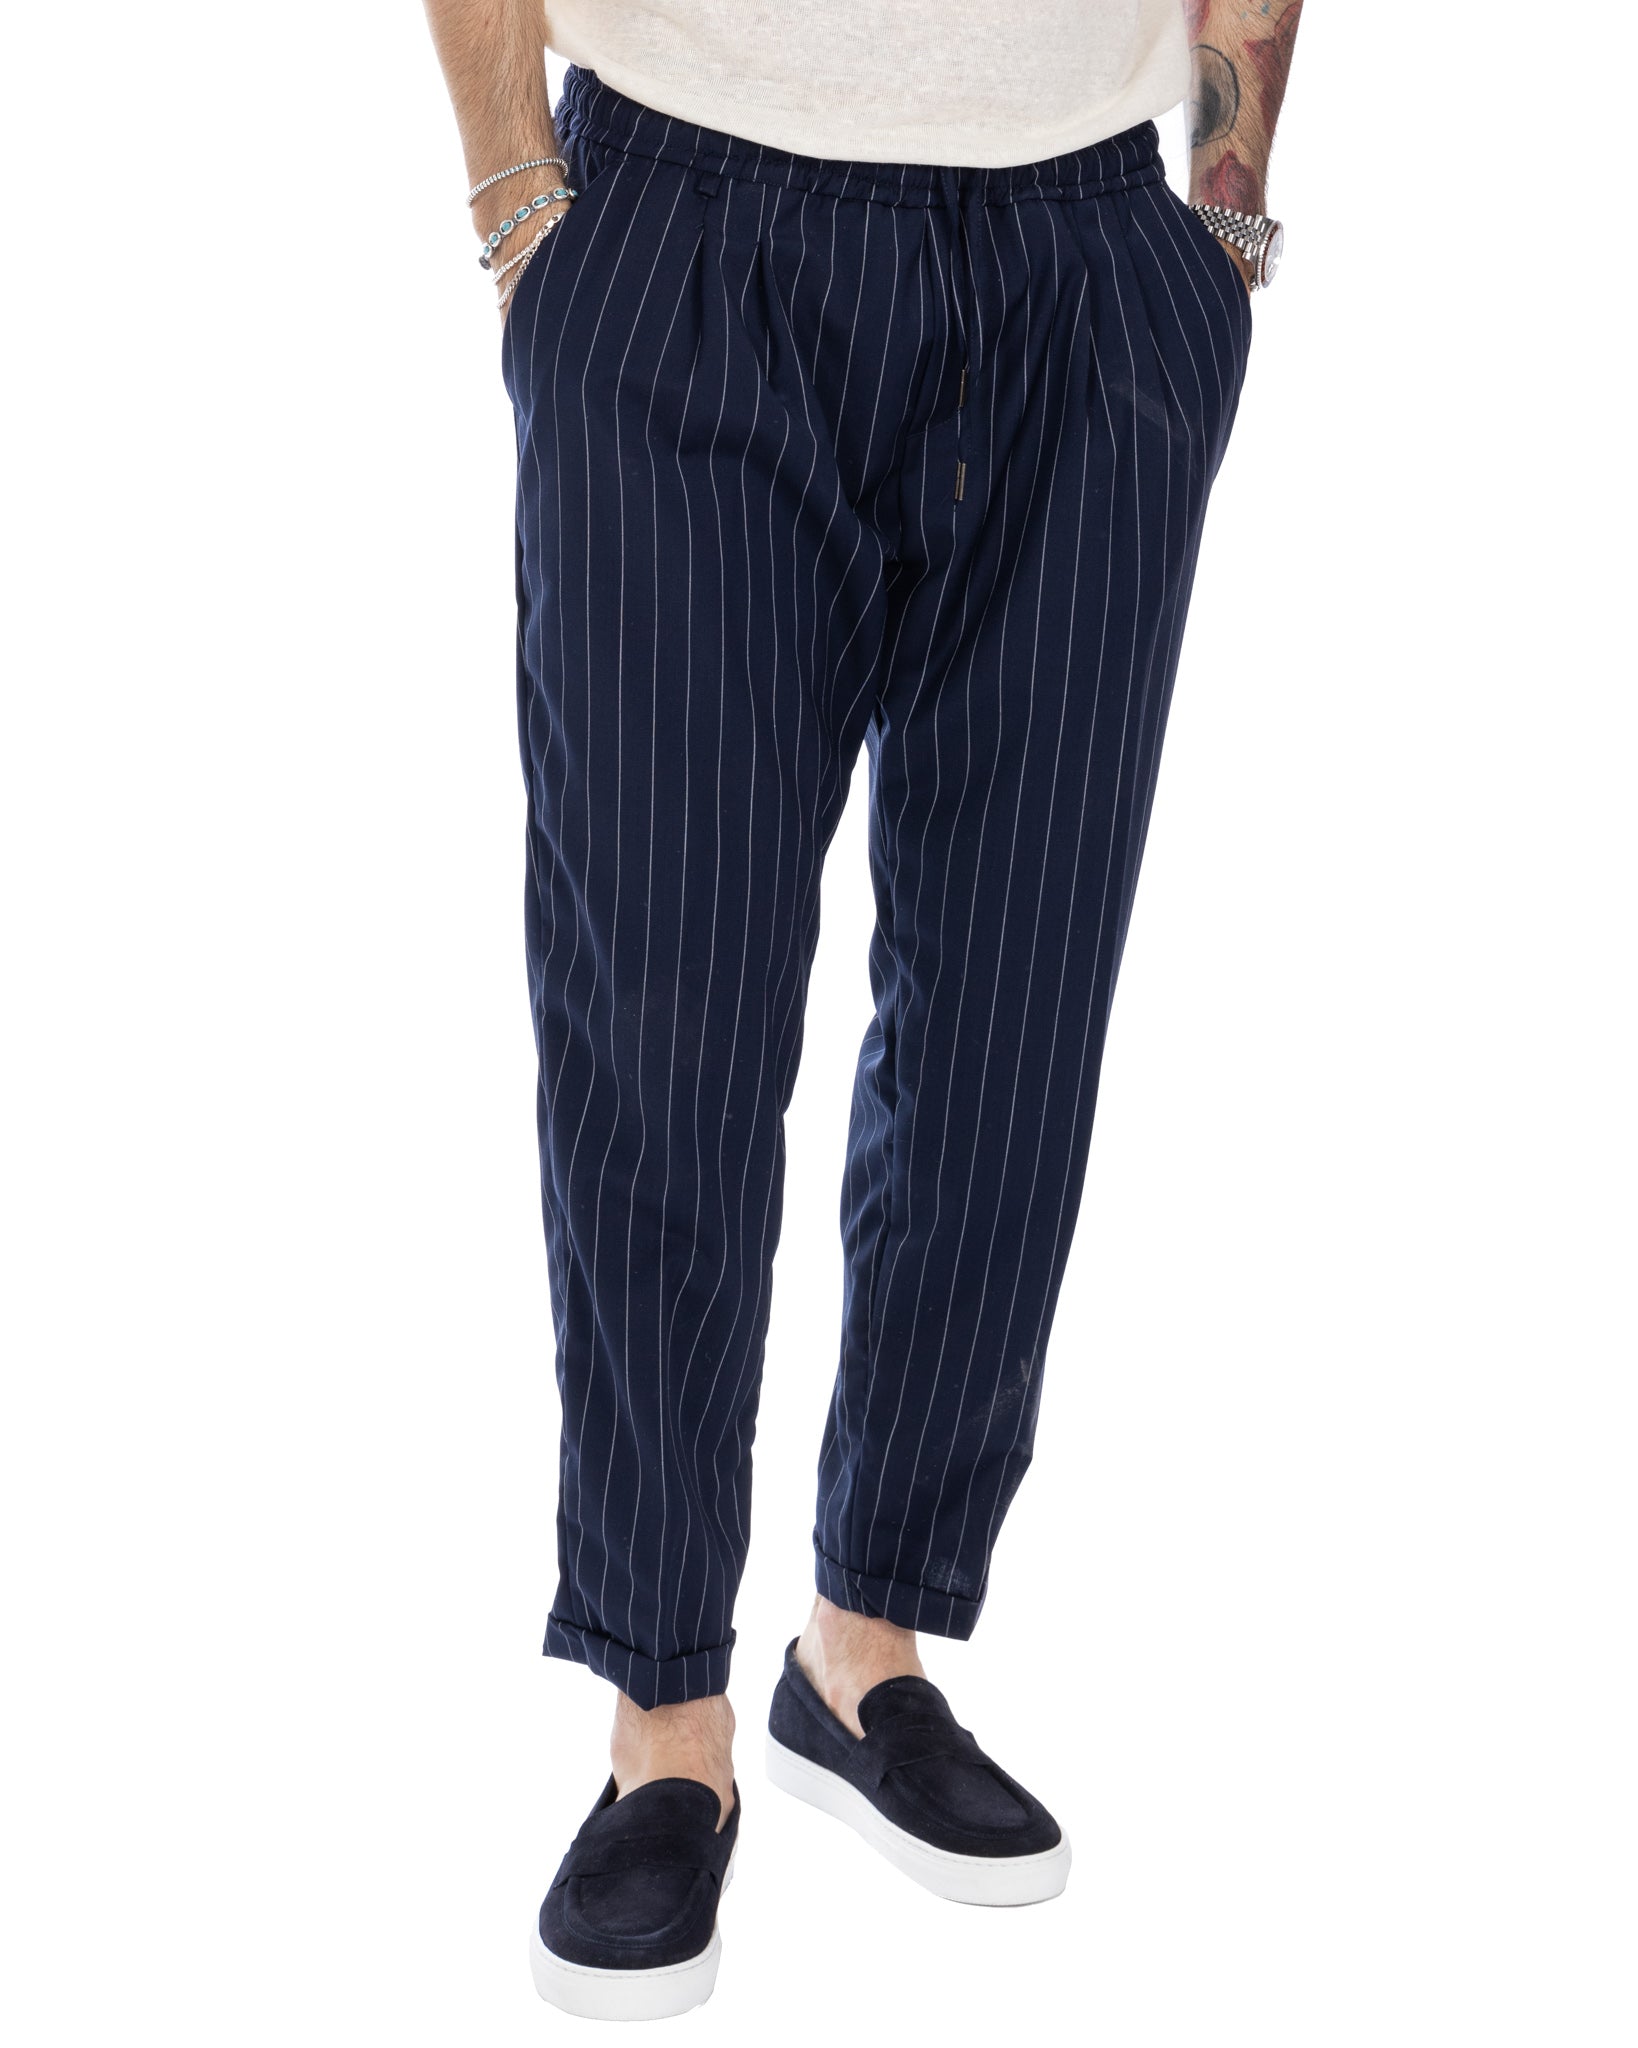 Elijah - blue pinstripe trousers in wool blend